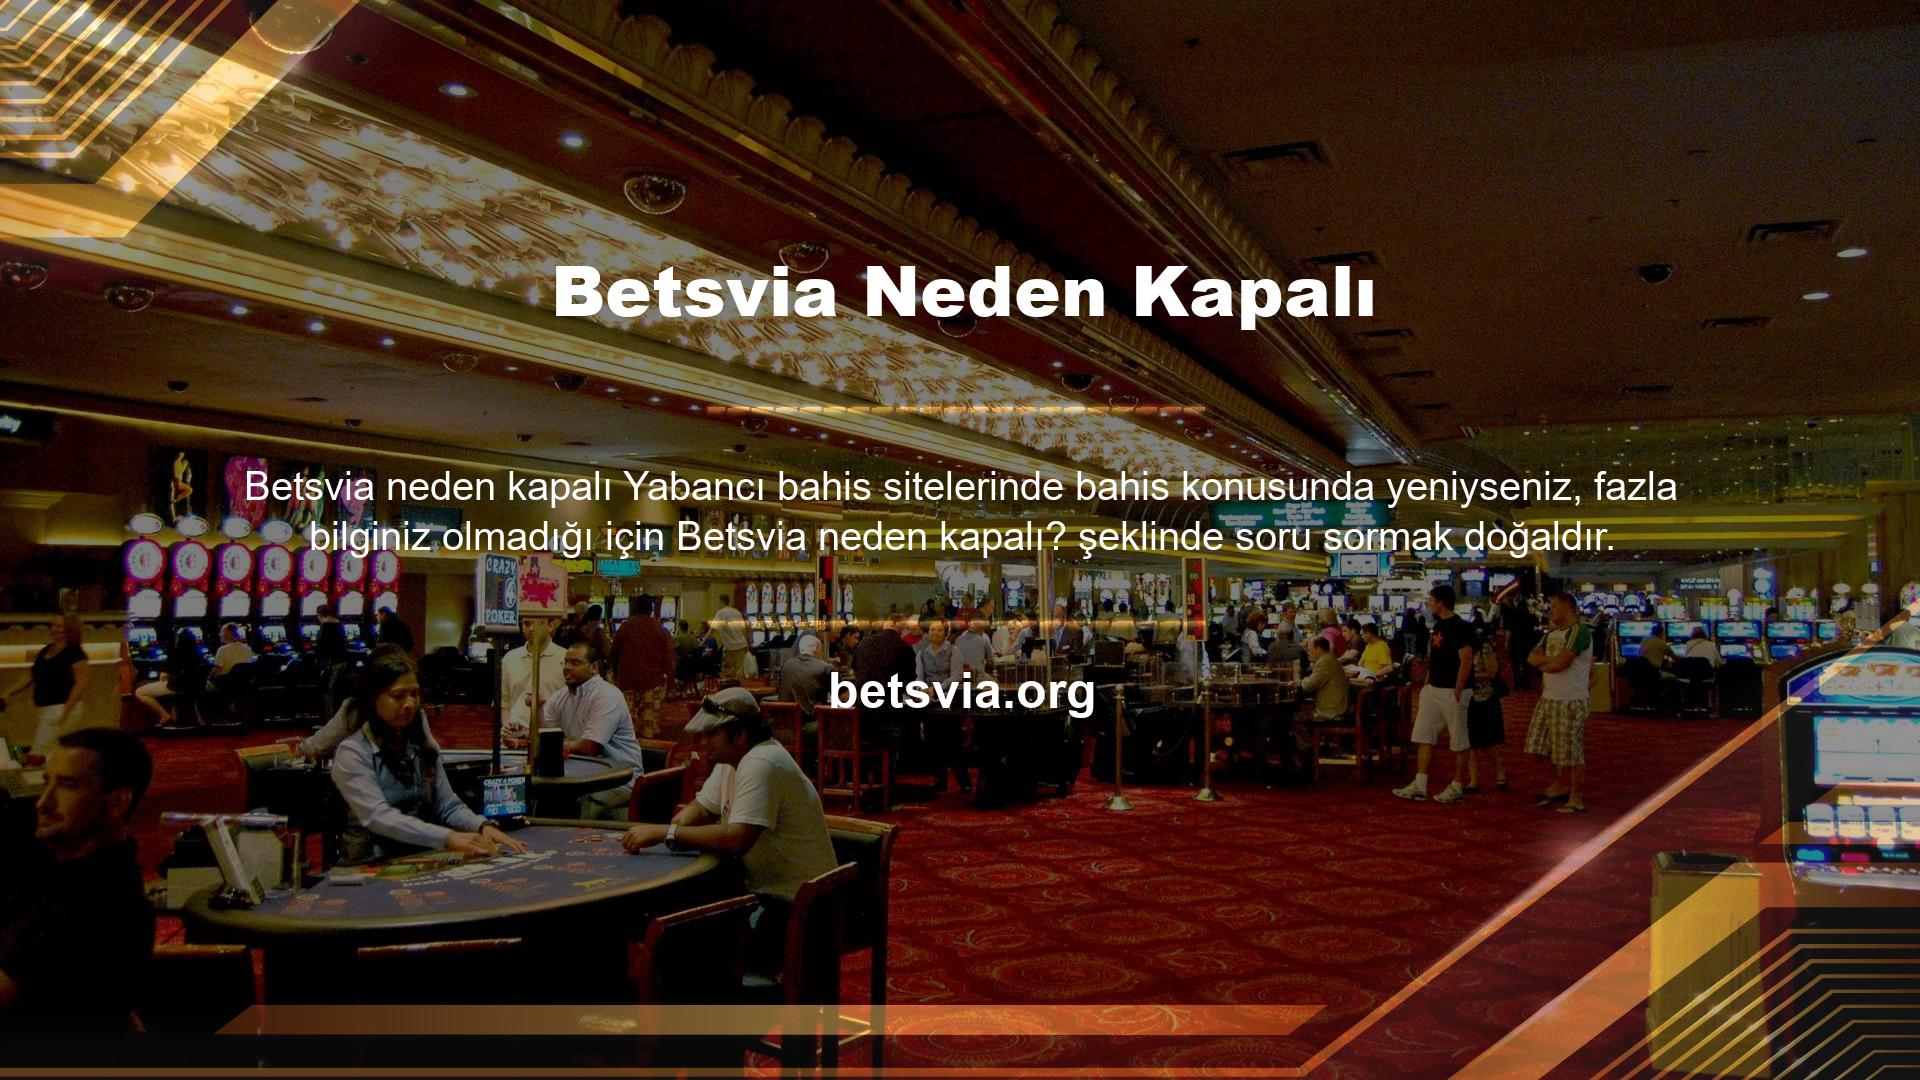 Betsvia internet sitesi yasa dışı yani devlet tarafından onaylanmayan bahisler sunduğu için kanun gereği TİB tarafından kapatılmıştır